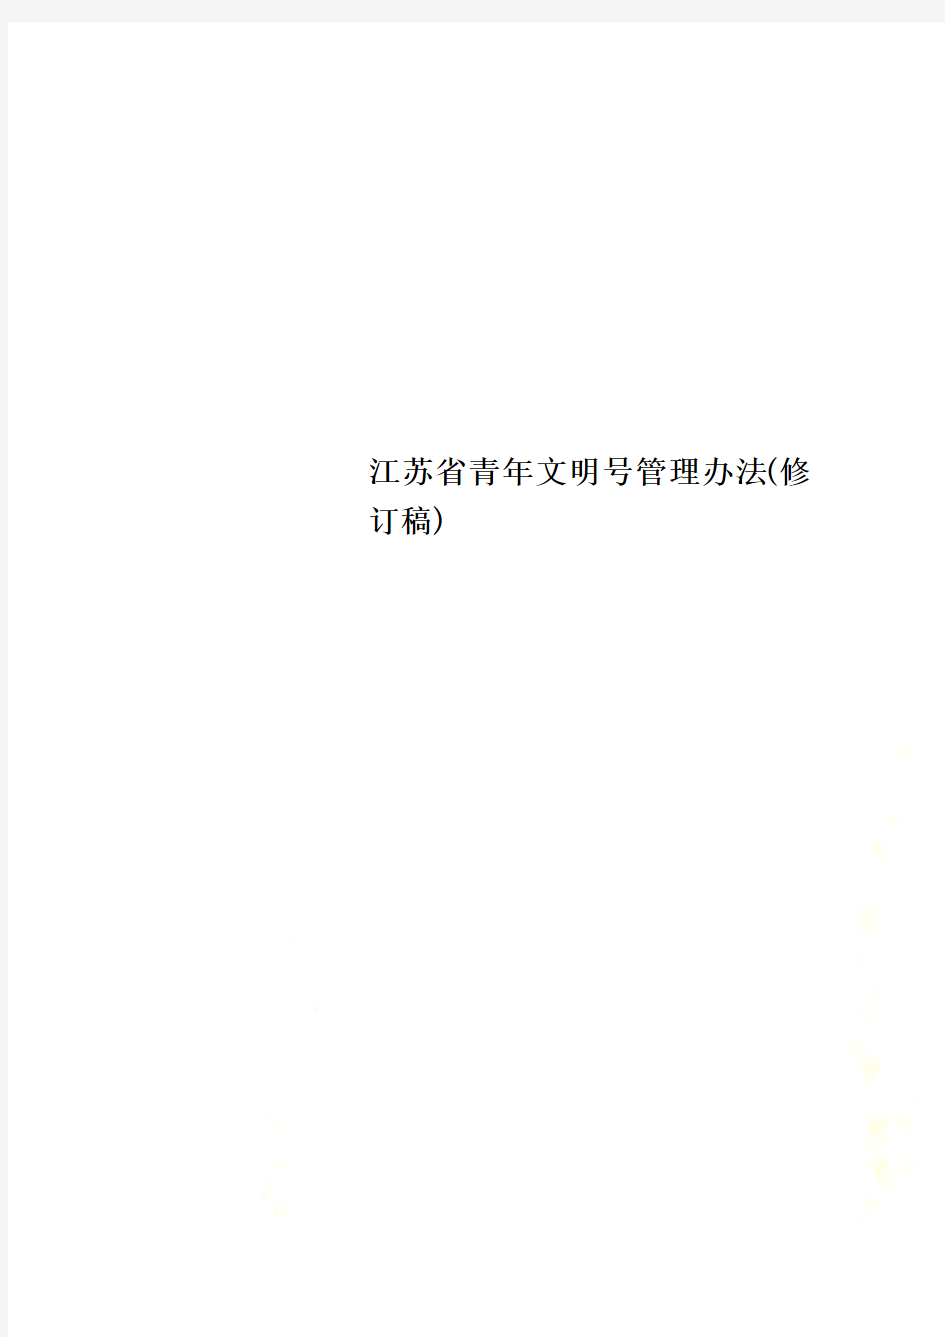 江苏省青年文明号管理办法(修订稿)